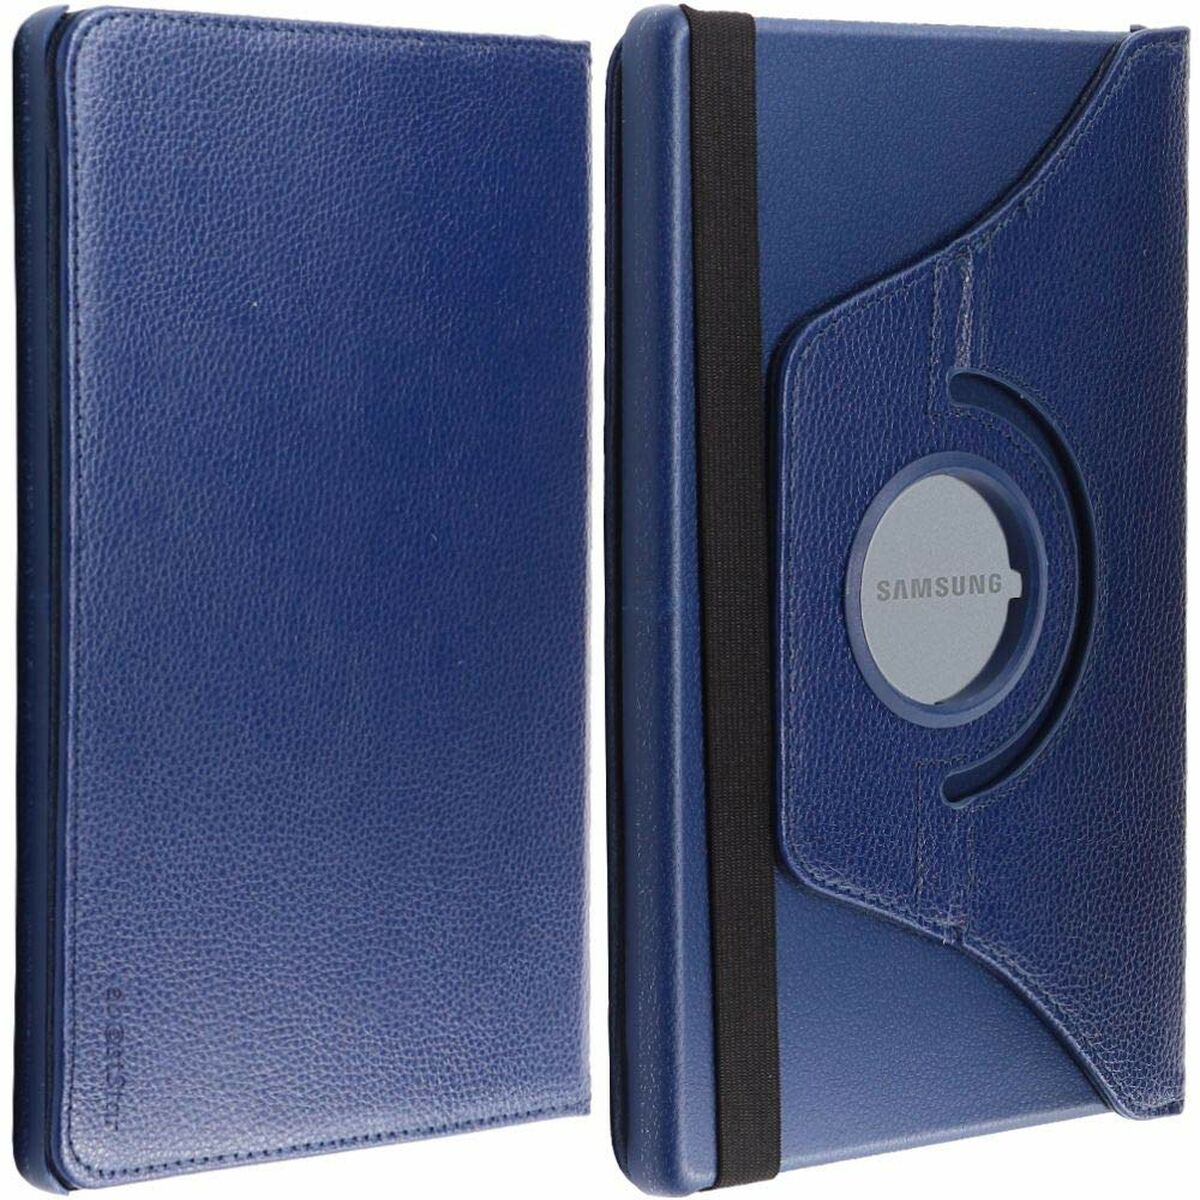 Tablet cover EBS0883810 10,1" Dark blue (Refurbished A)